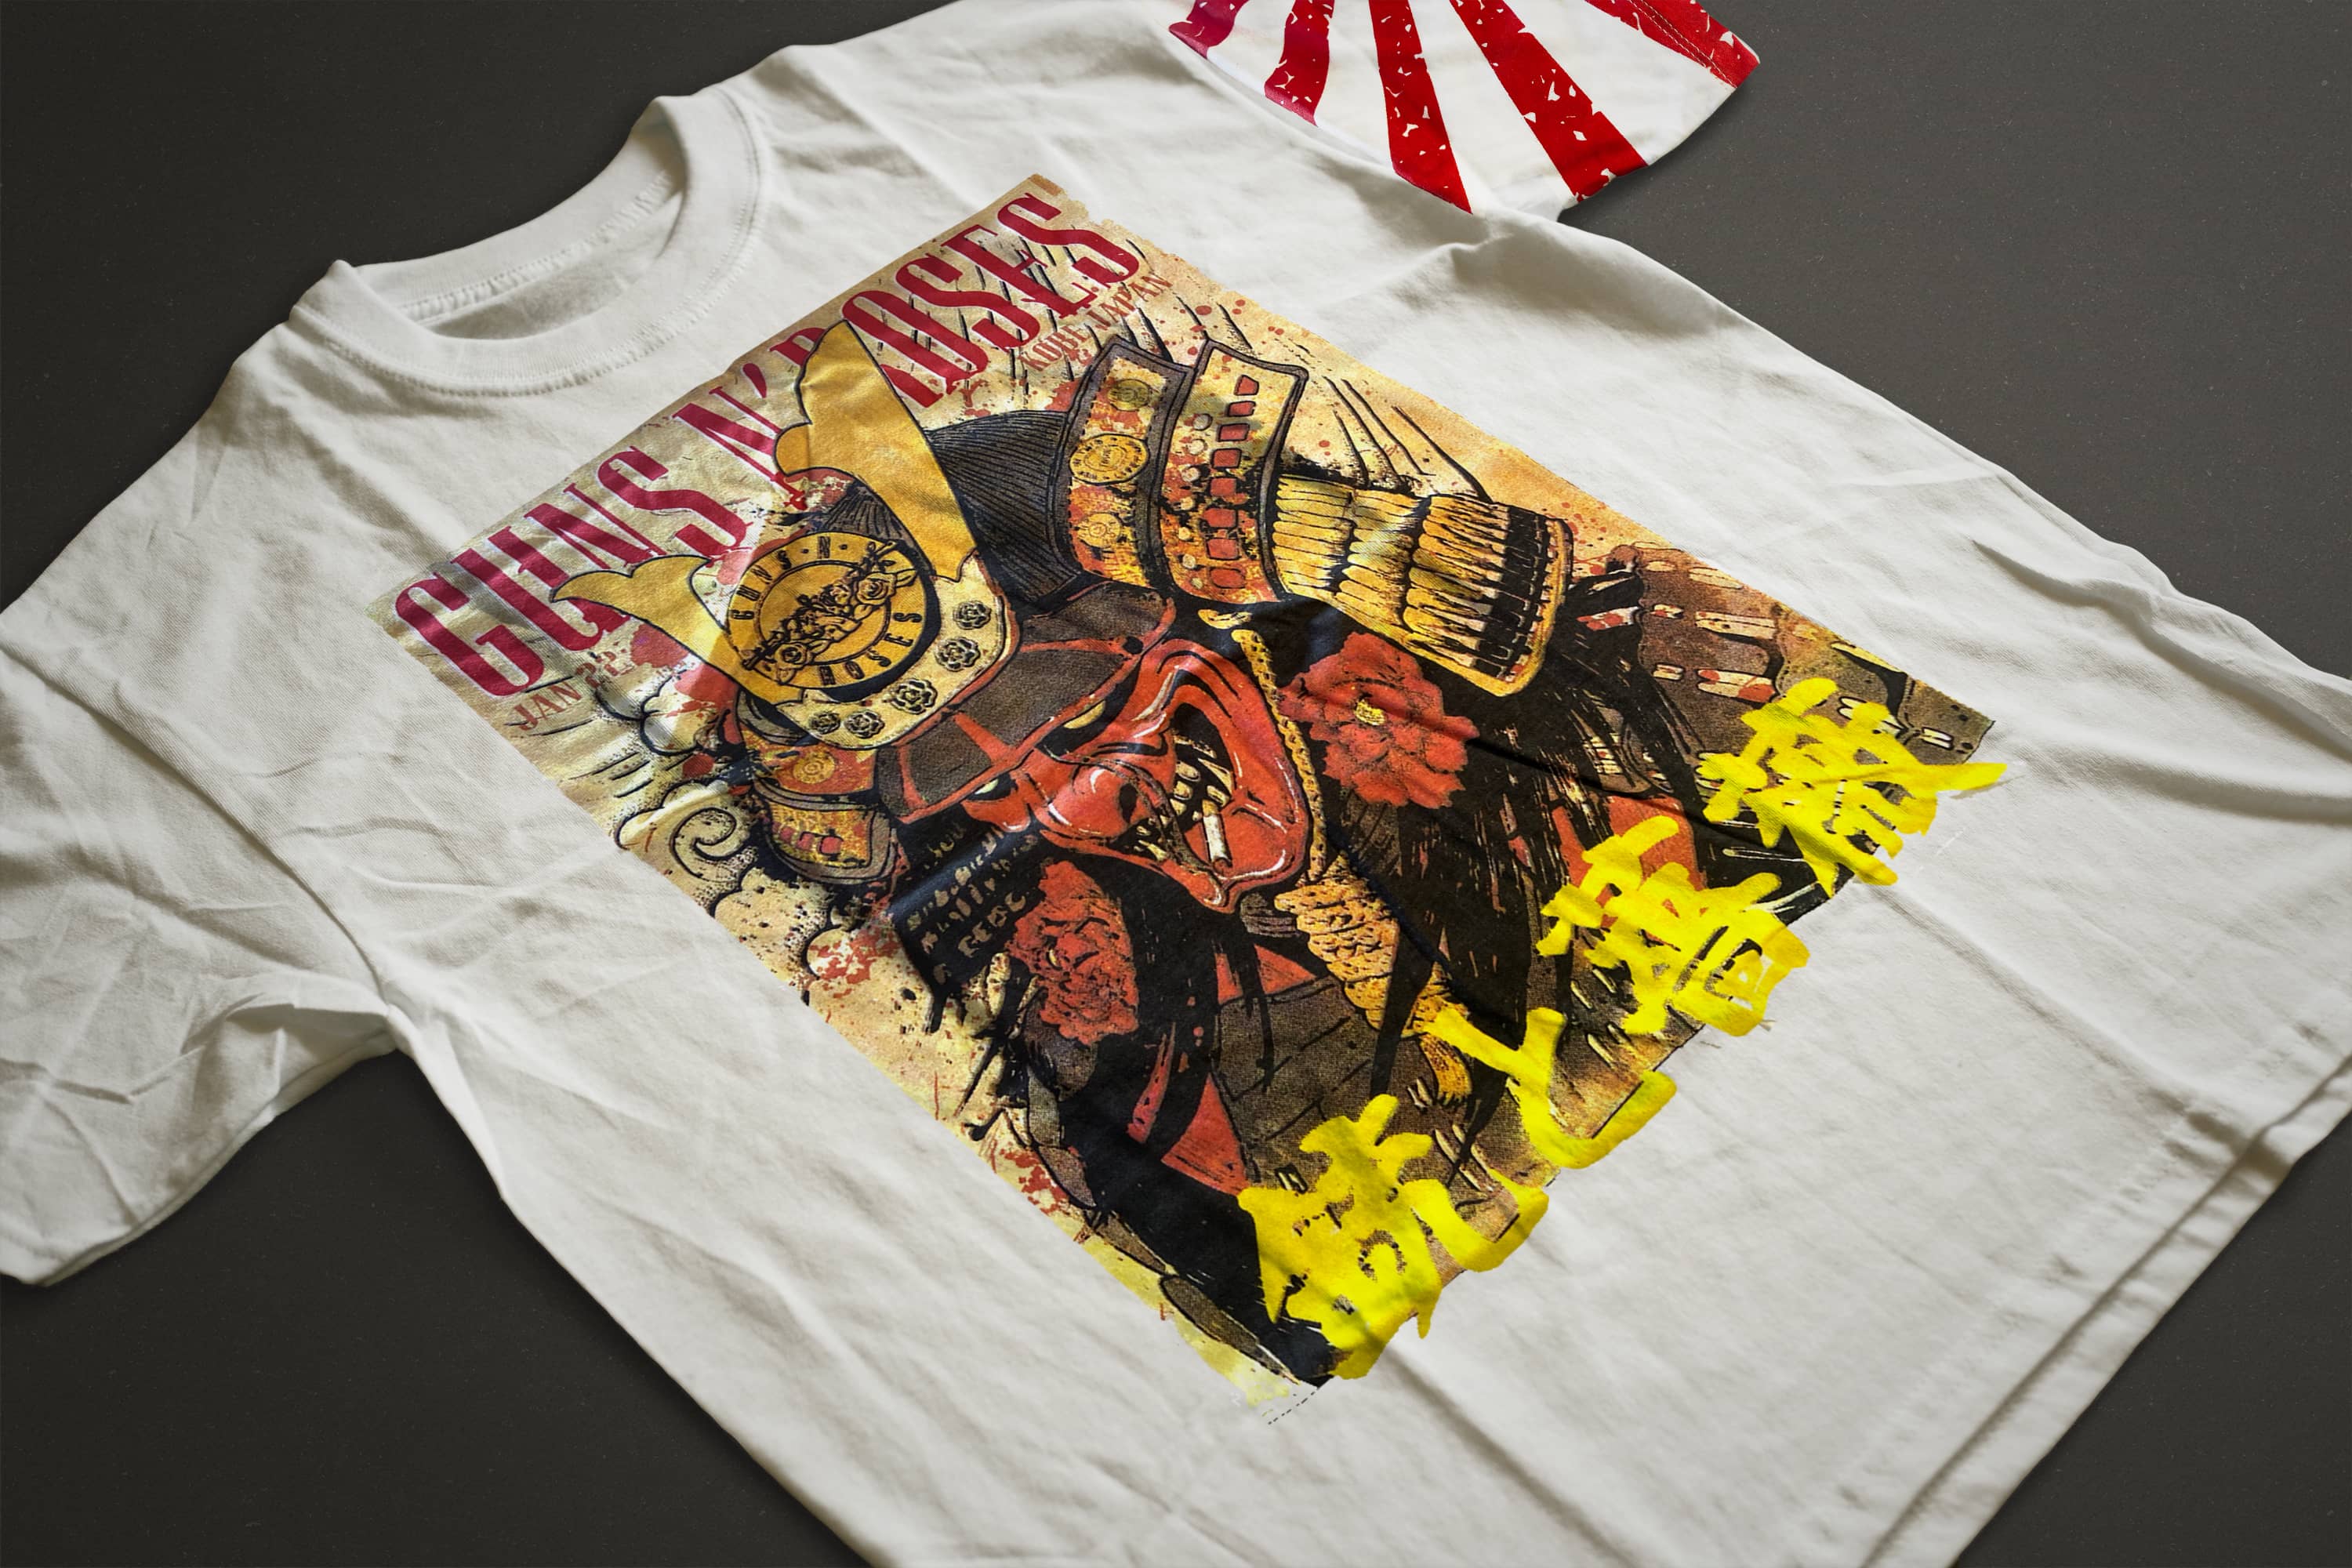 Guns N' Roses - Live in Kobe, Japan T-Shirt (Japanese Print Cream White)